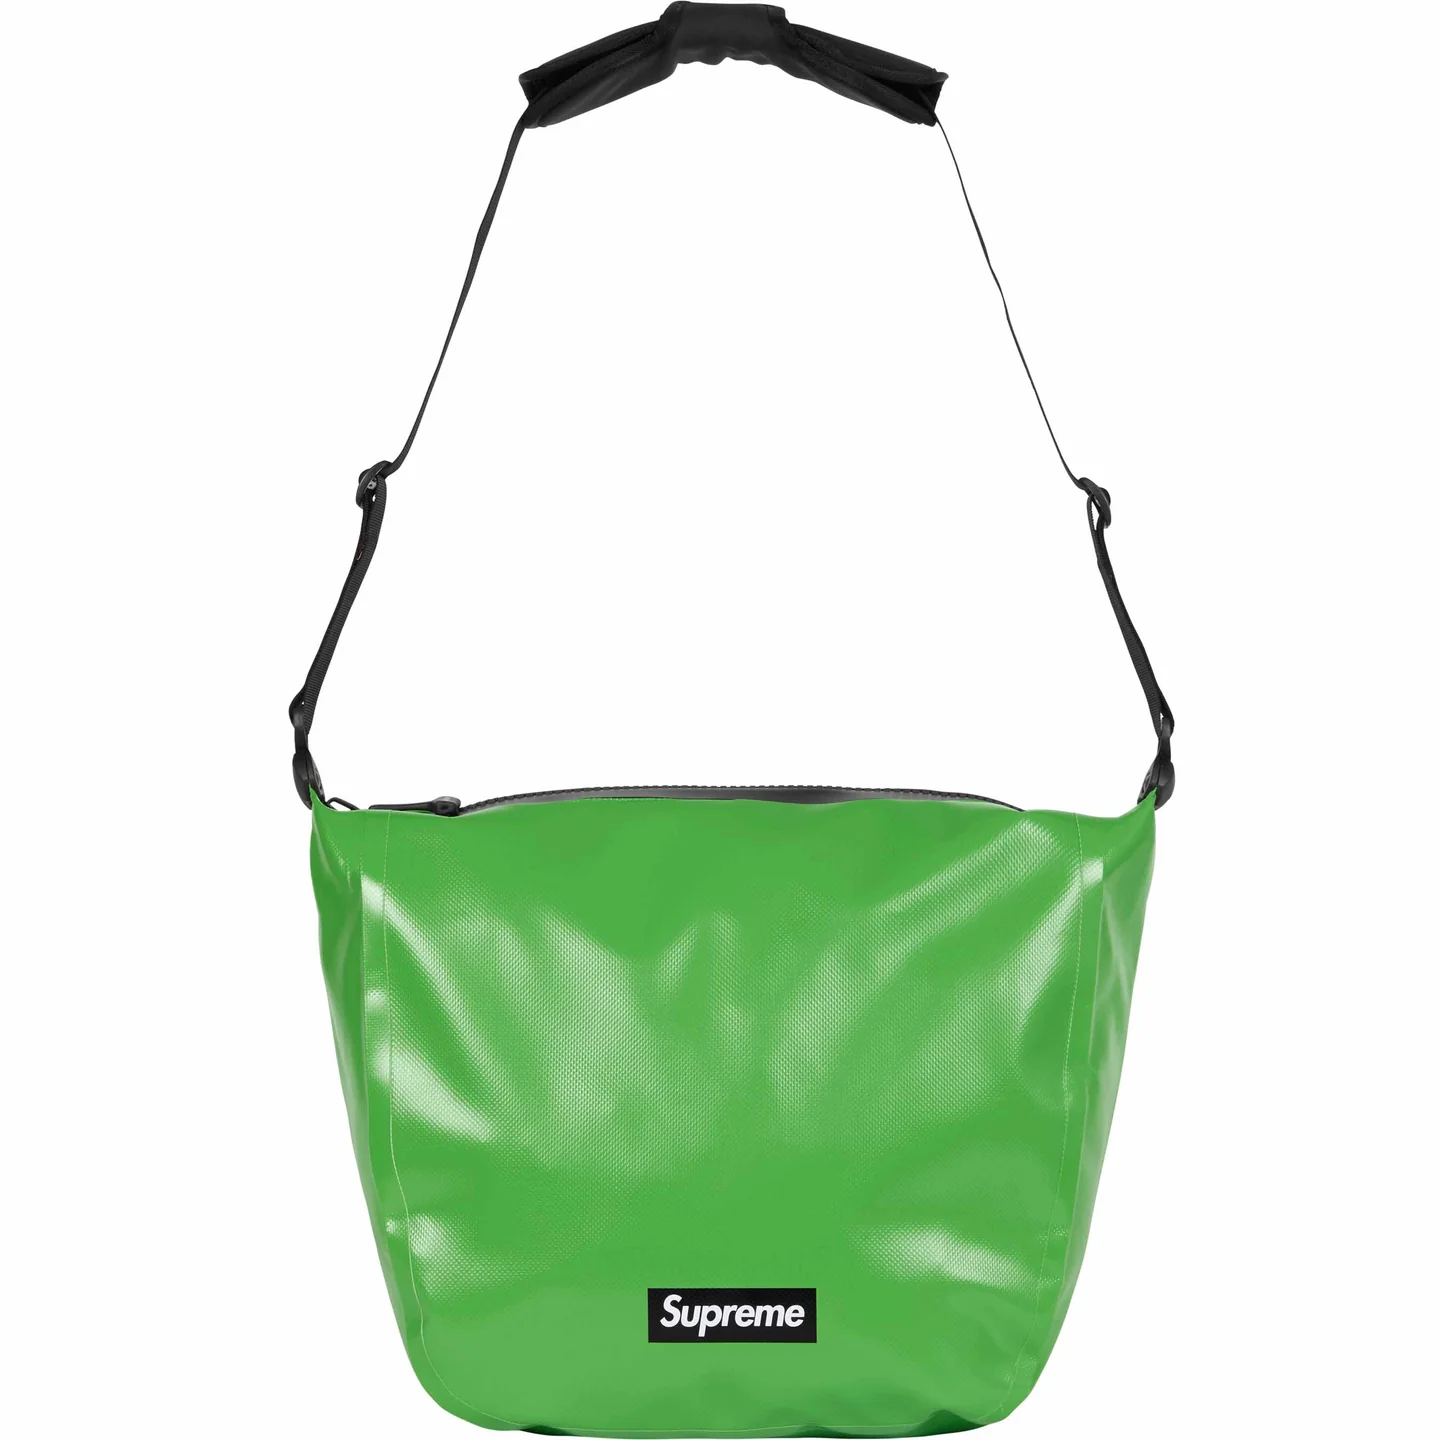 Supreme®/ORTLIEB Small Messenger Bag | Supreme 24ss